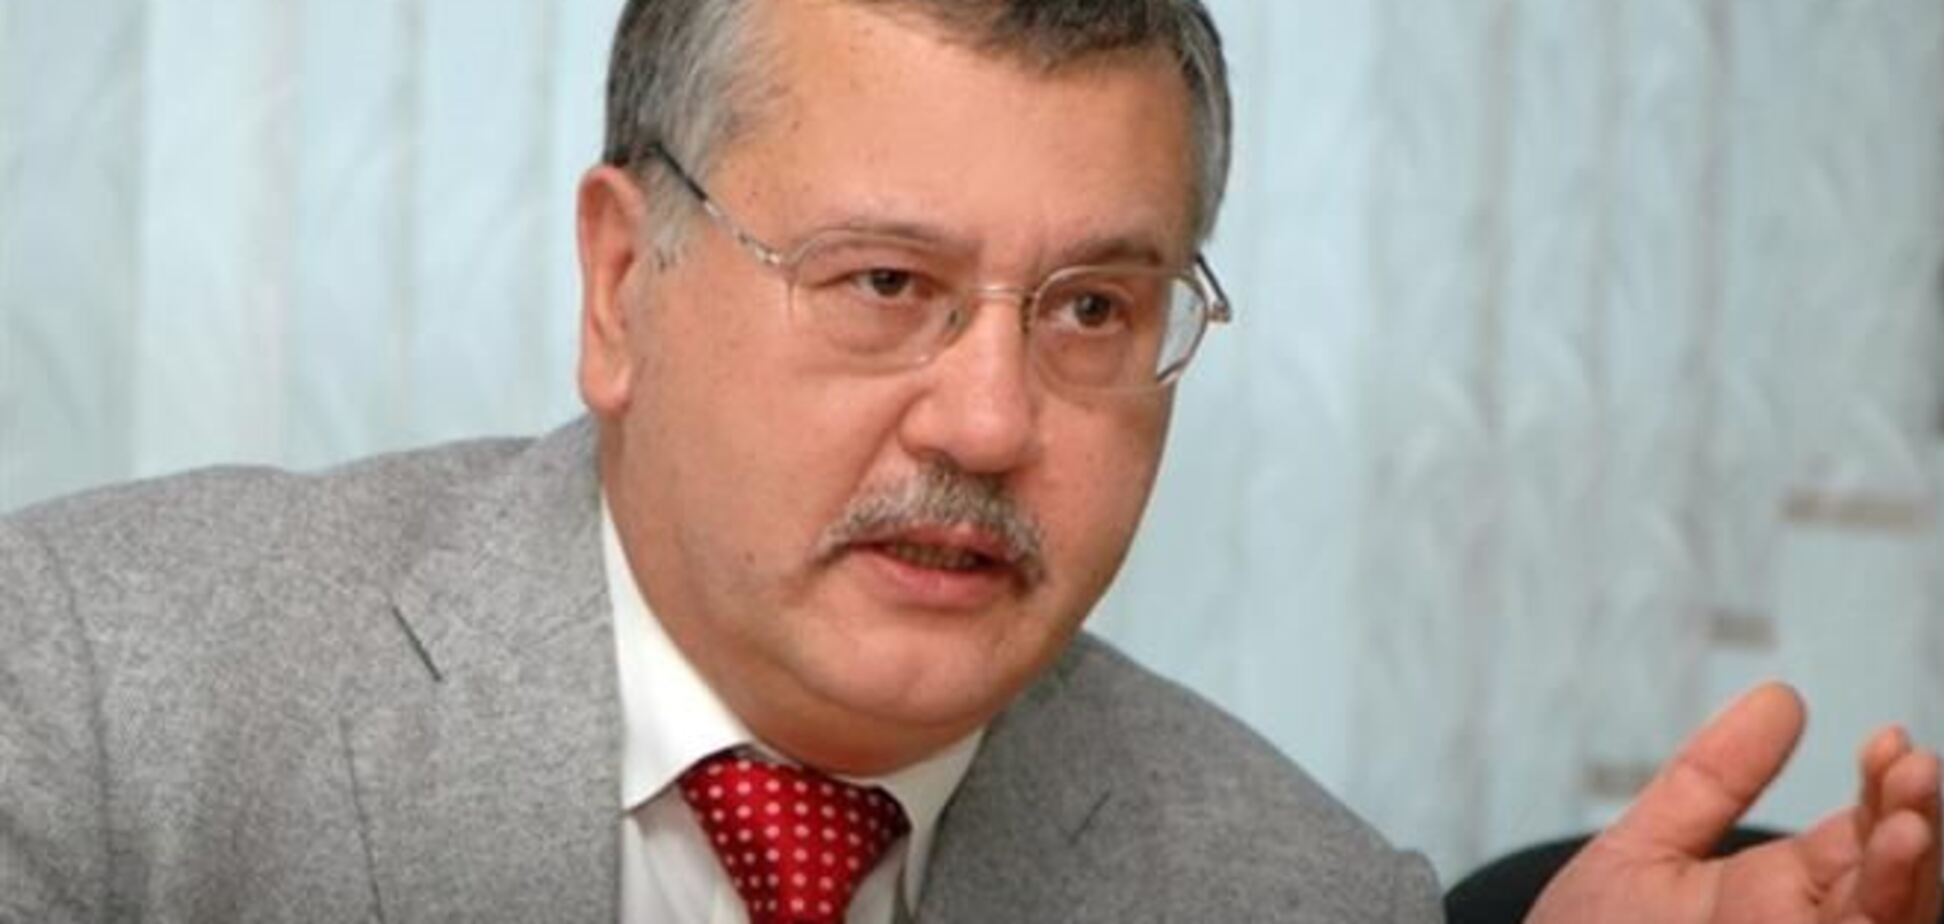 Гриценко задекларировал 438 тыс грн дохода в 2013 году